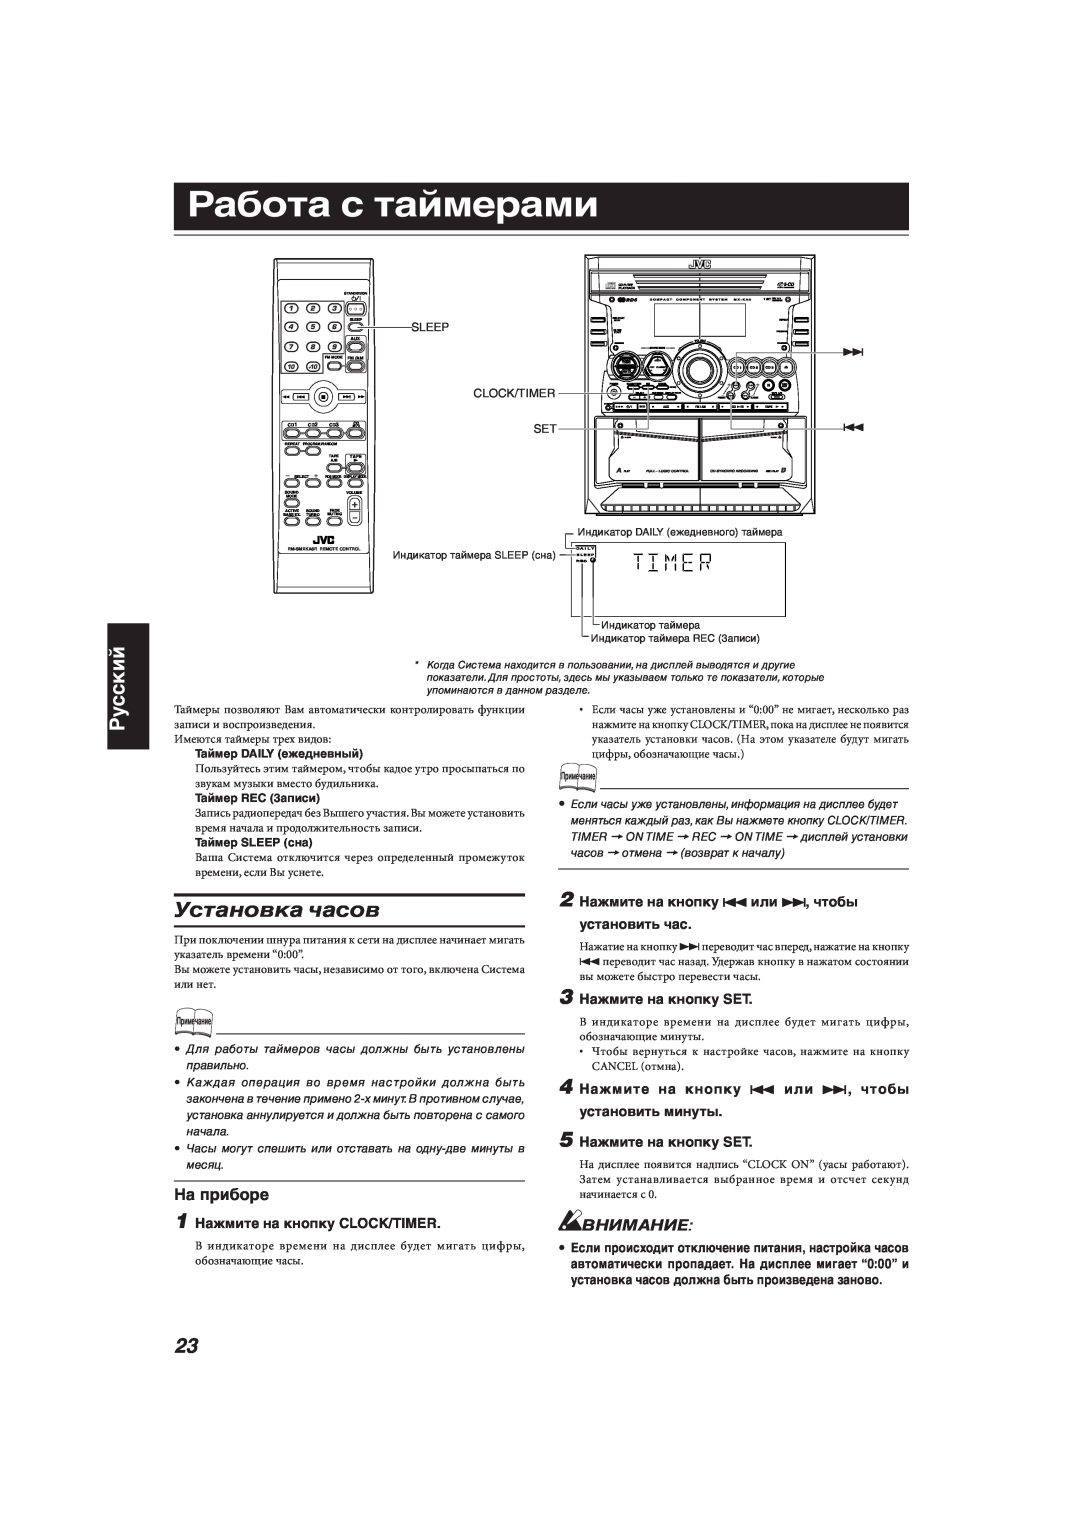 JVC MX-KA66 manual Работа с таймерами, Установка часов, Русский, Внимание, 1 Нажмите на кнопку CLOCK/TIMER 